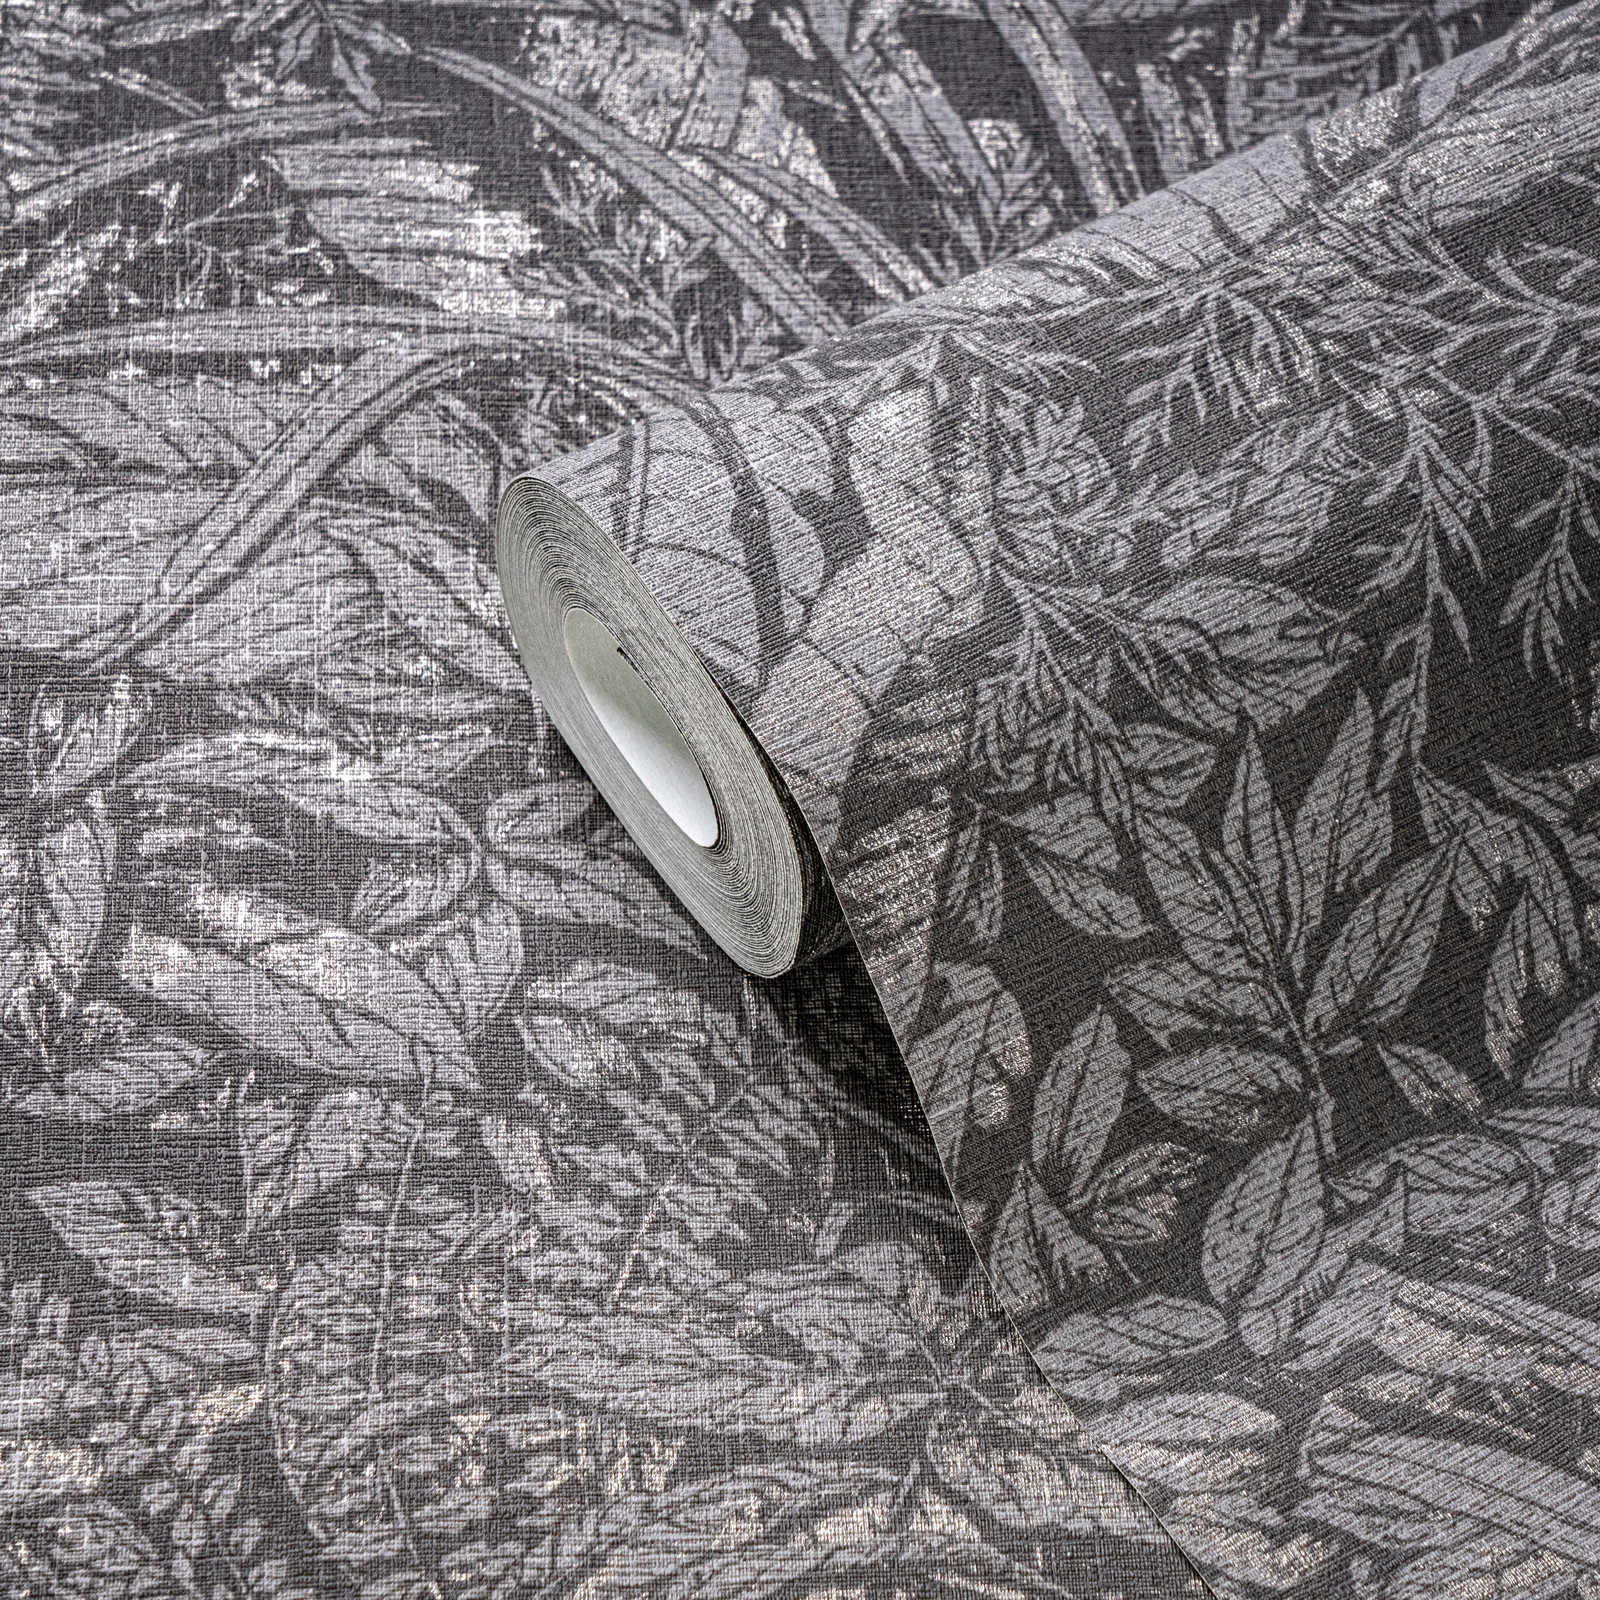             Vliesbehang met bloemenbladmotief - grijs, zwart, zilver
        